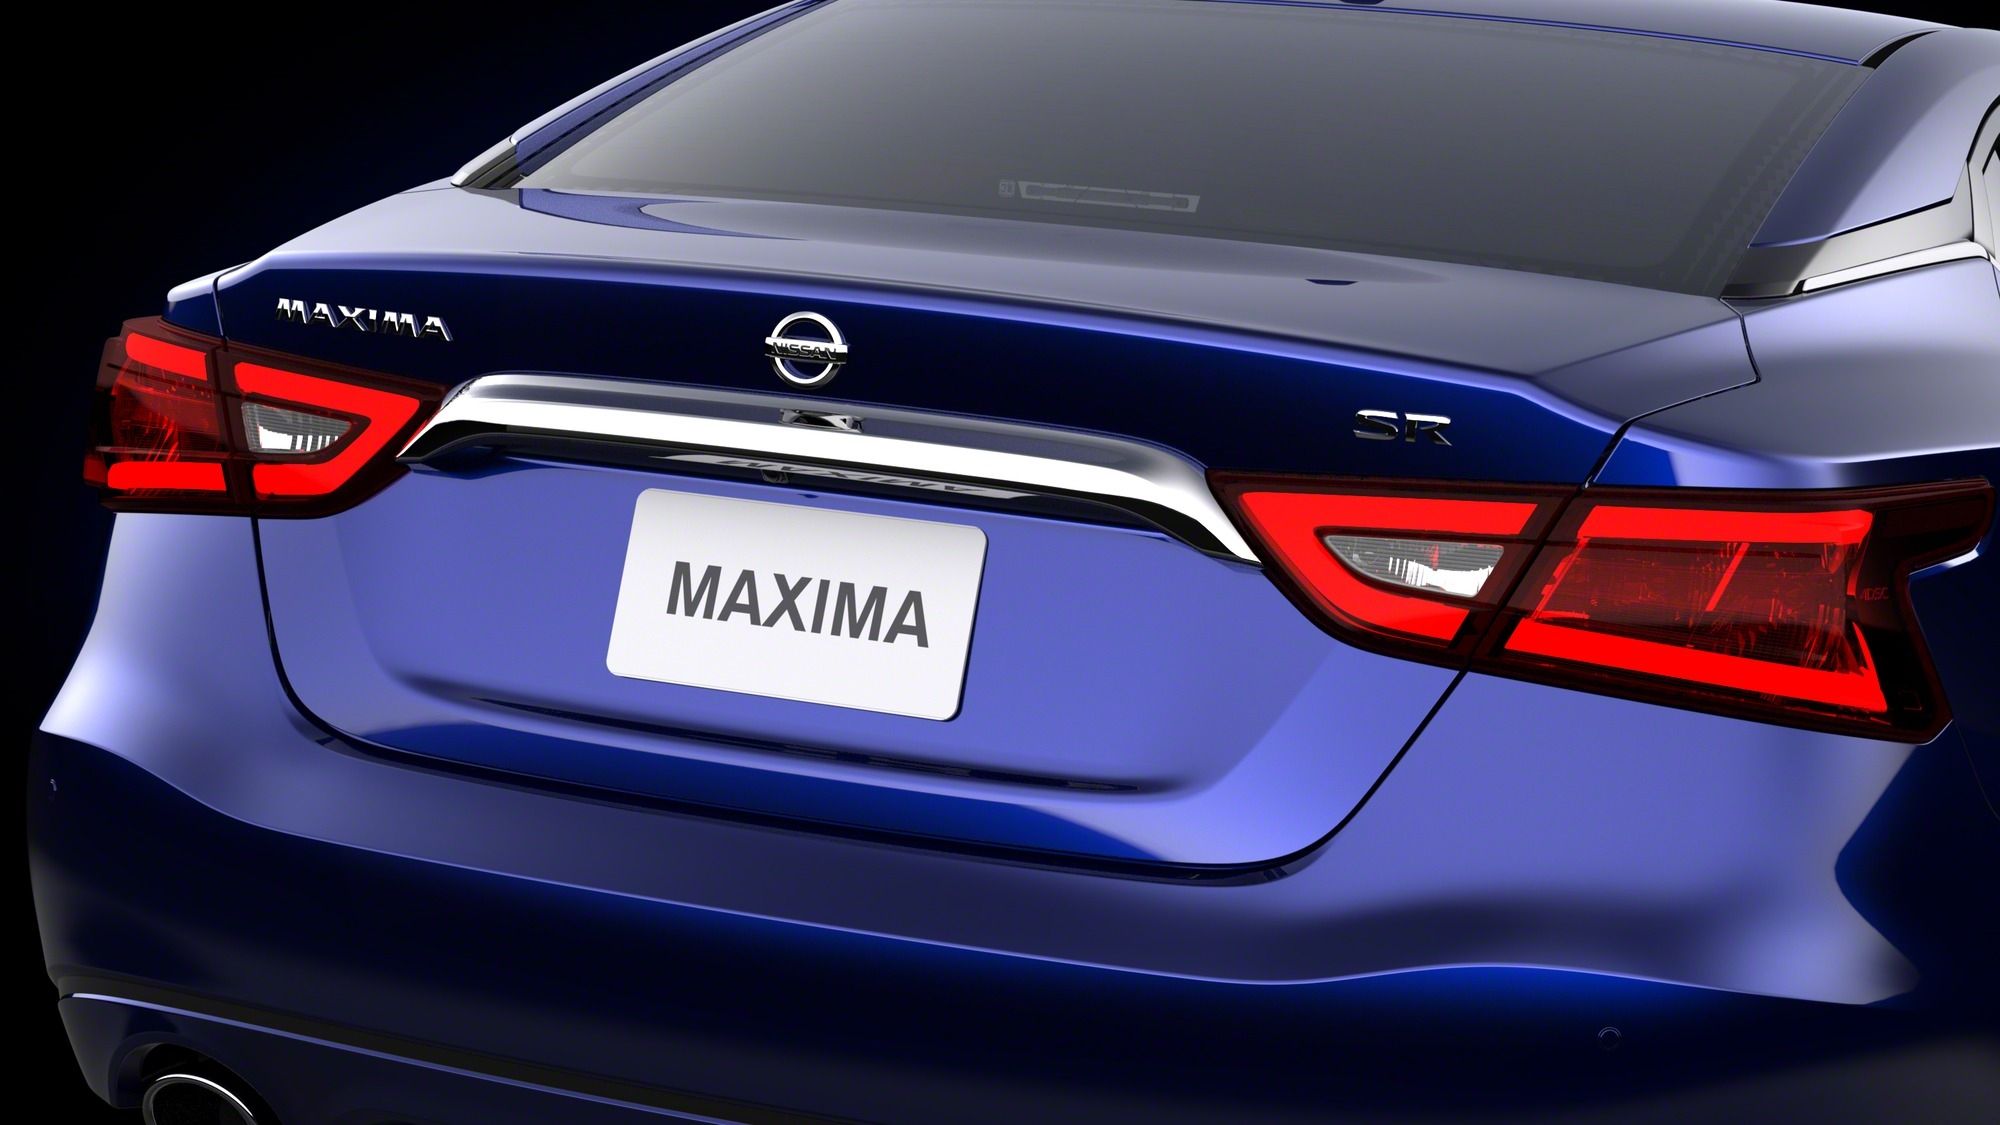 2016 - 2017 Nissan Maxima